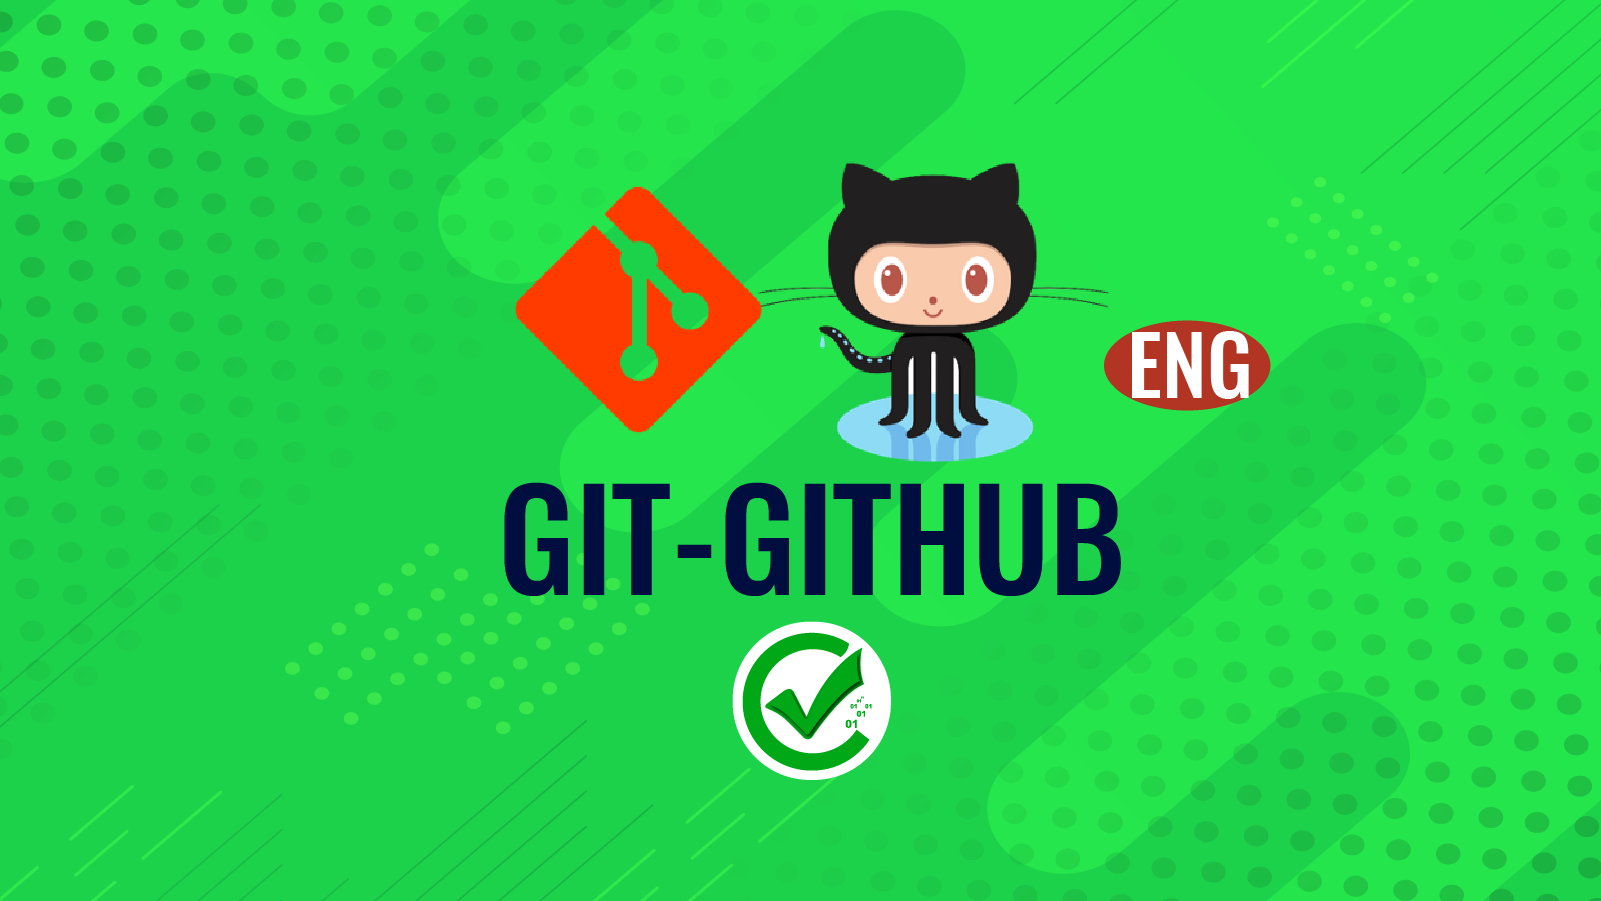 Git-Github 123-124